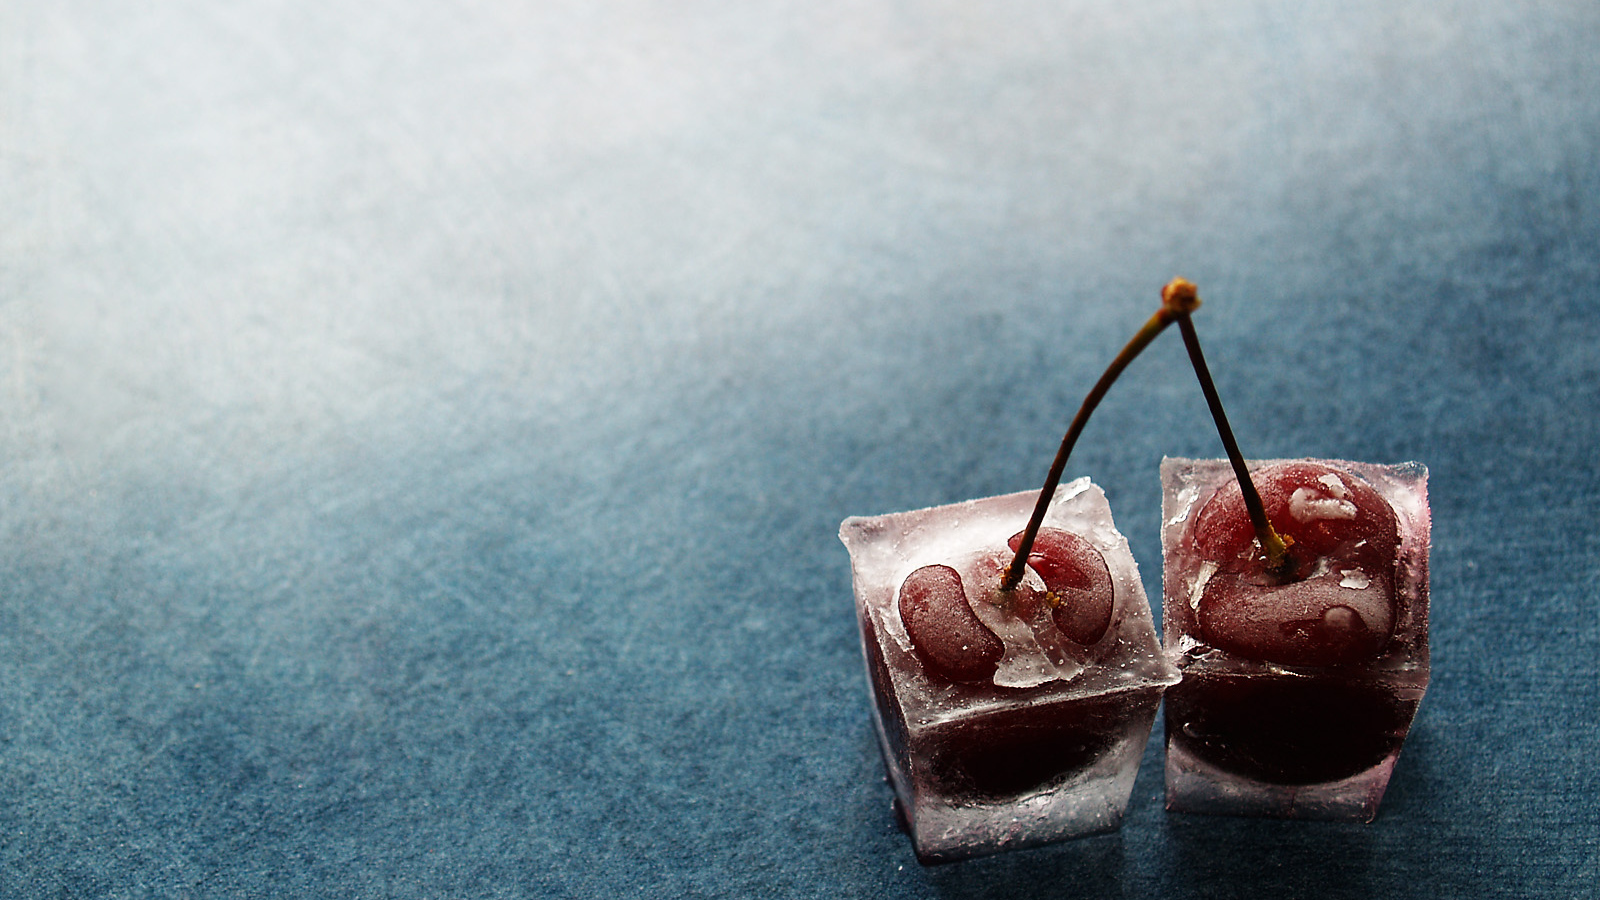 Cherries in ice